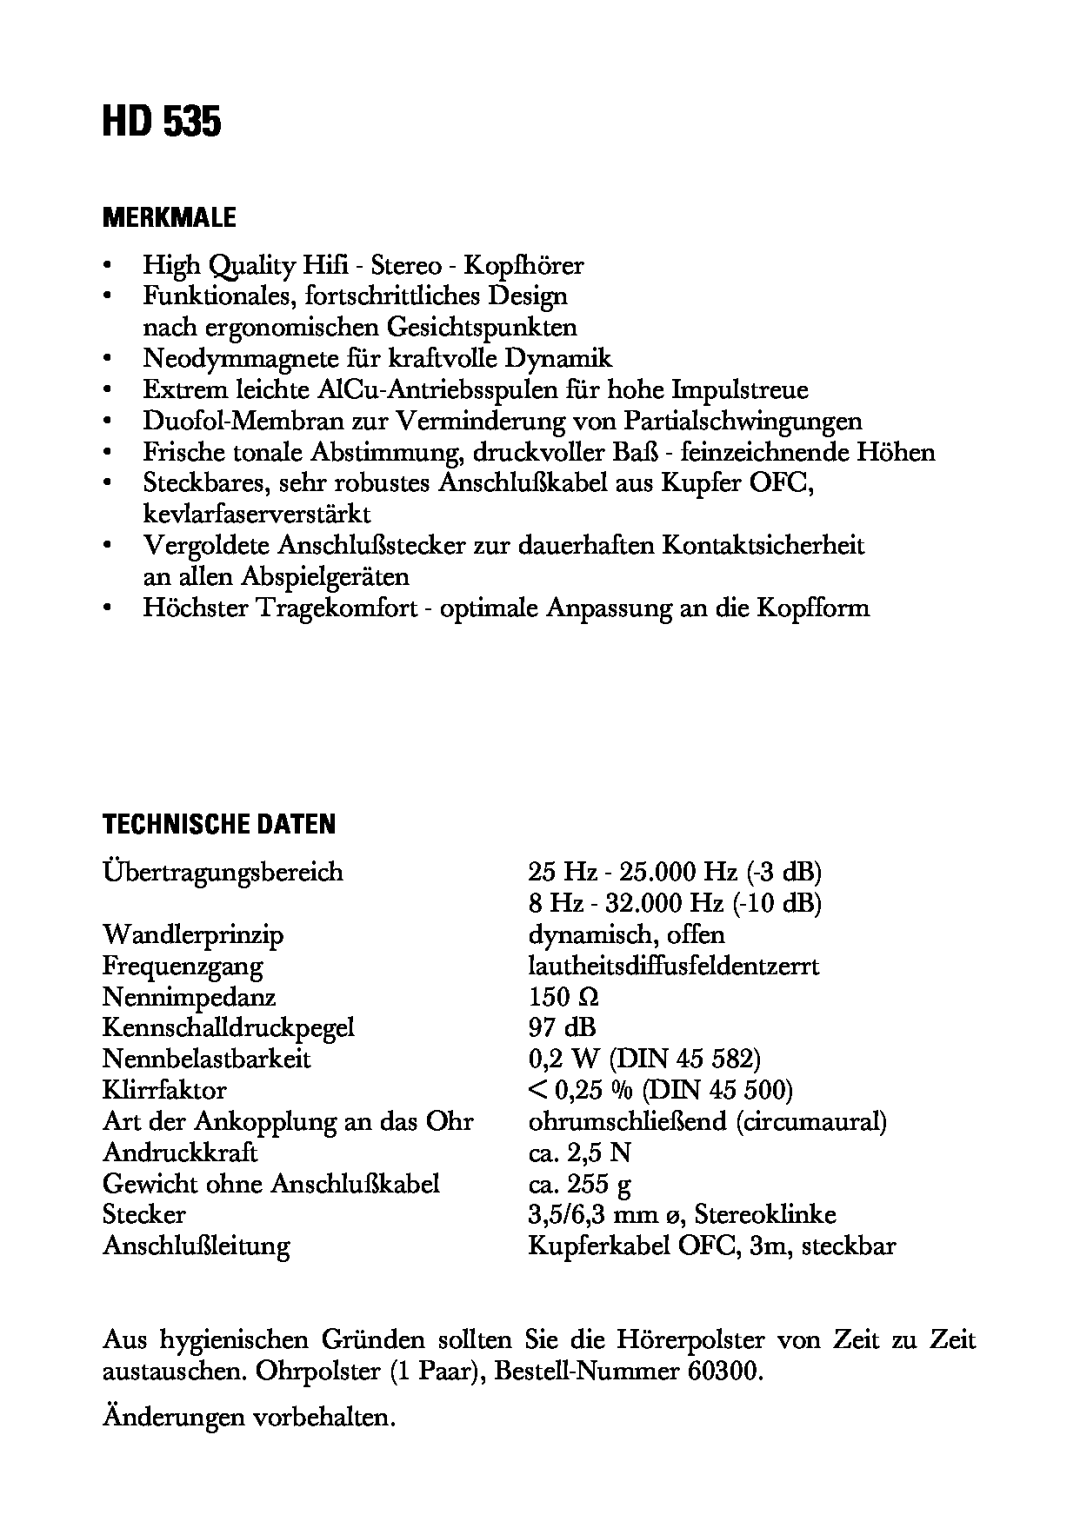 Sennheiser HD 535 manual Merkmale, Technische Daten 